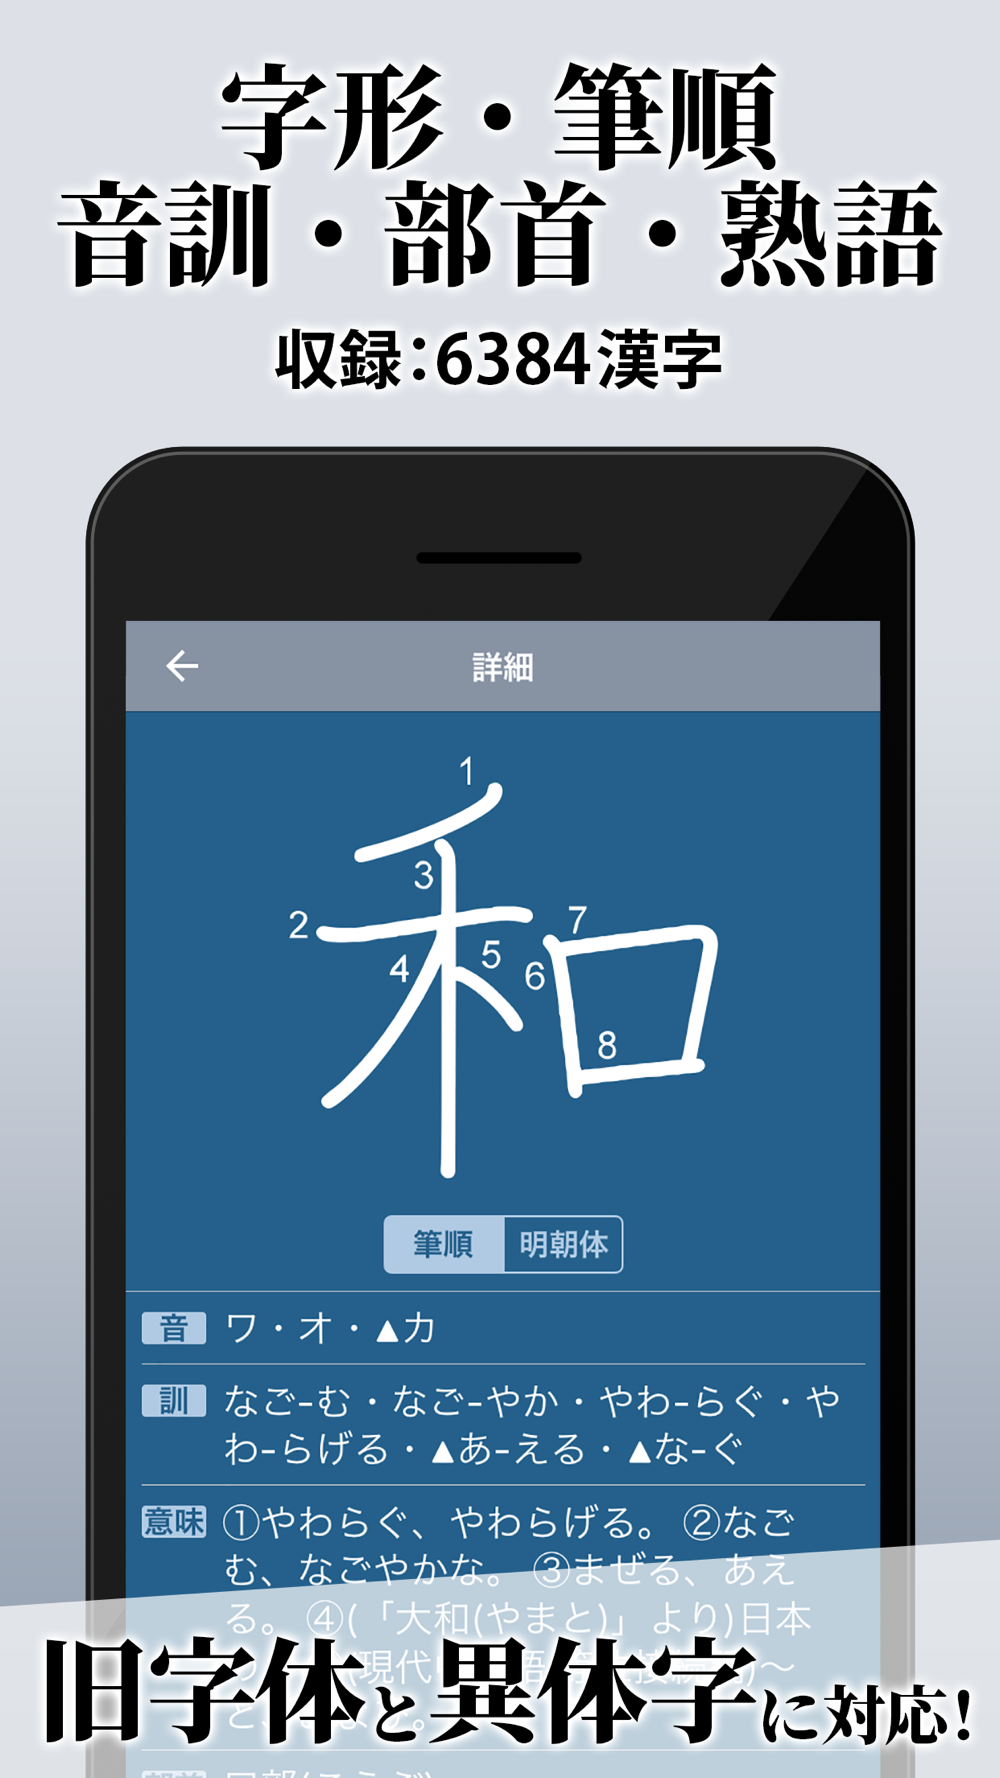 漢字辞典 手書き漢字検索アプリ Free Download App For Iphone Steprimo Com